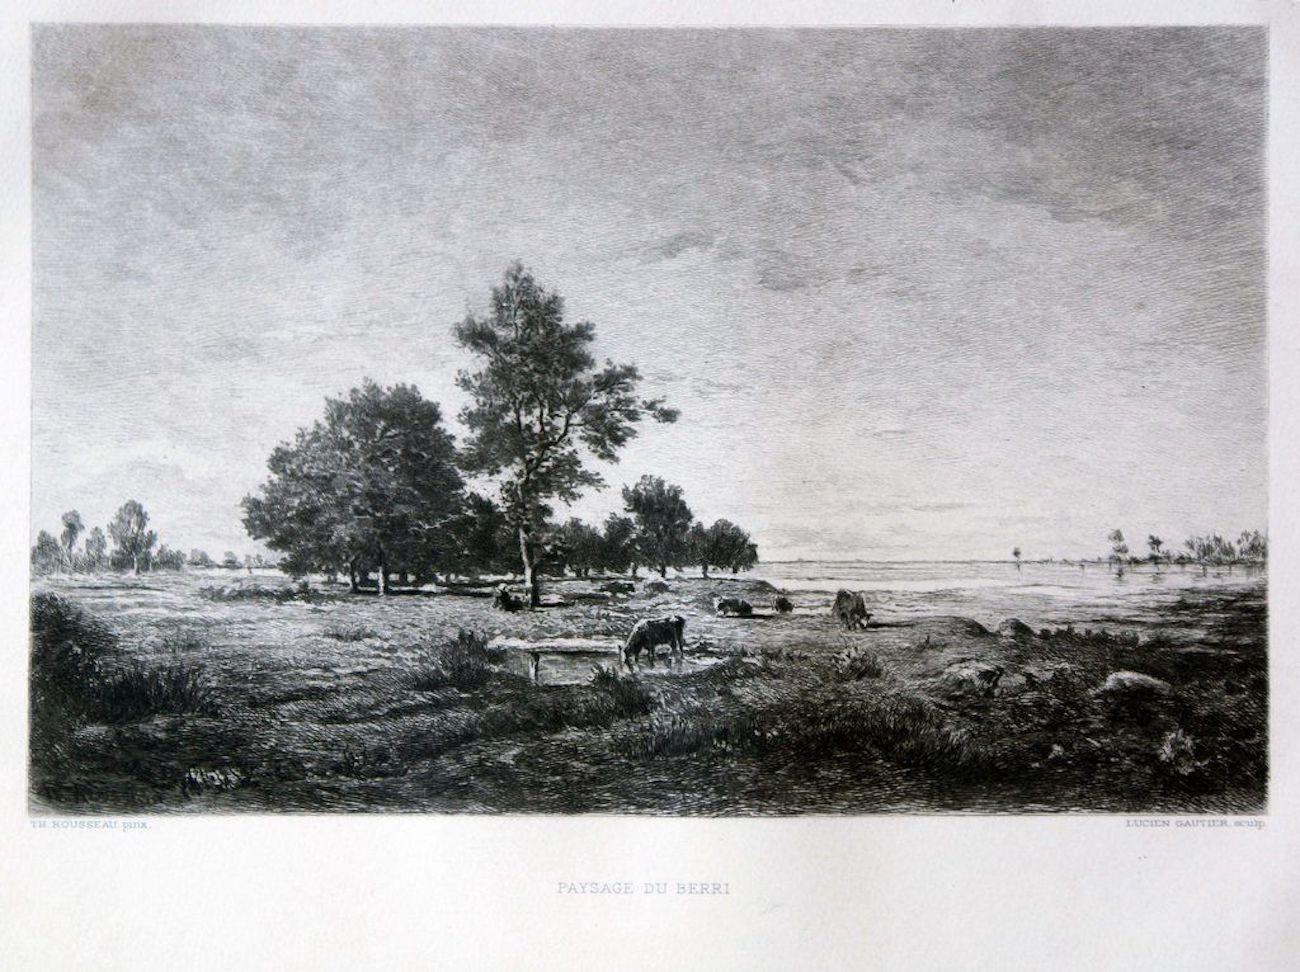 Lucien Gautier Landscape Print - Paysage du Berri - Etching and Aquatint After Théodore Rousseau - Late 1800